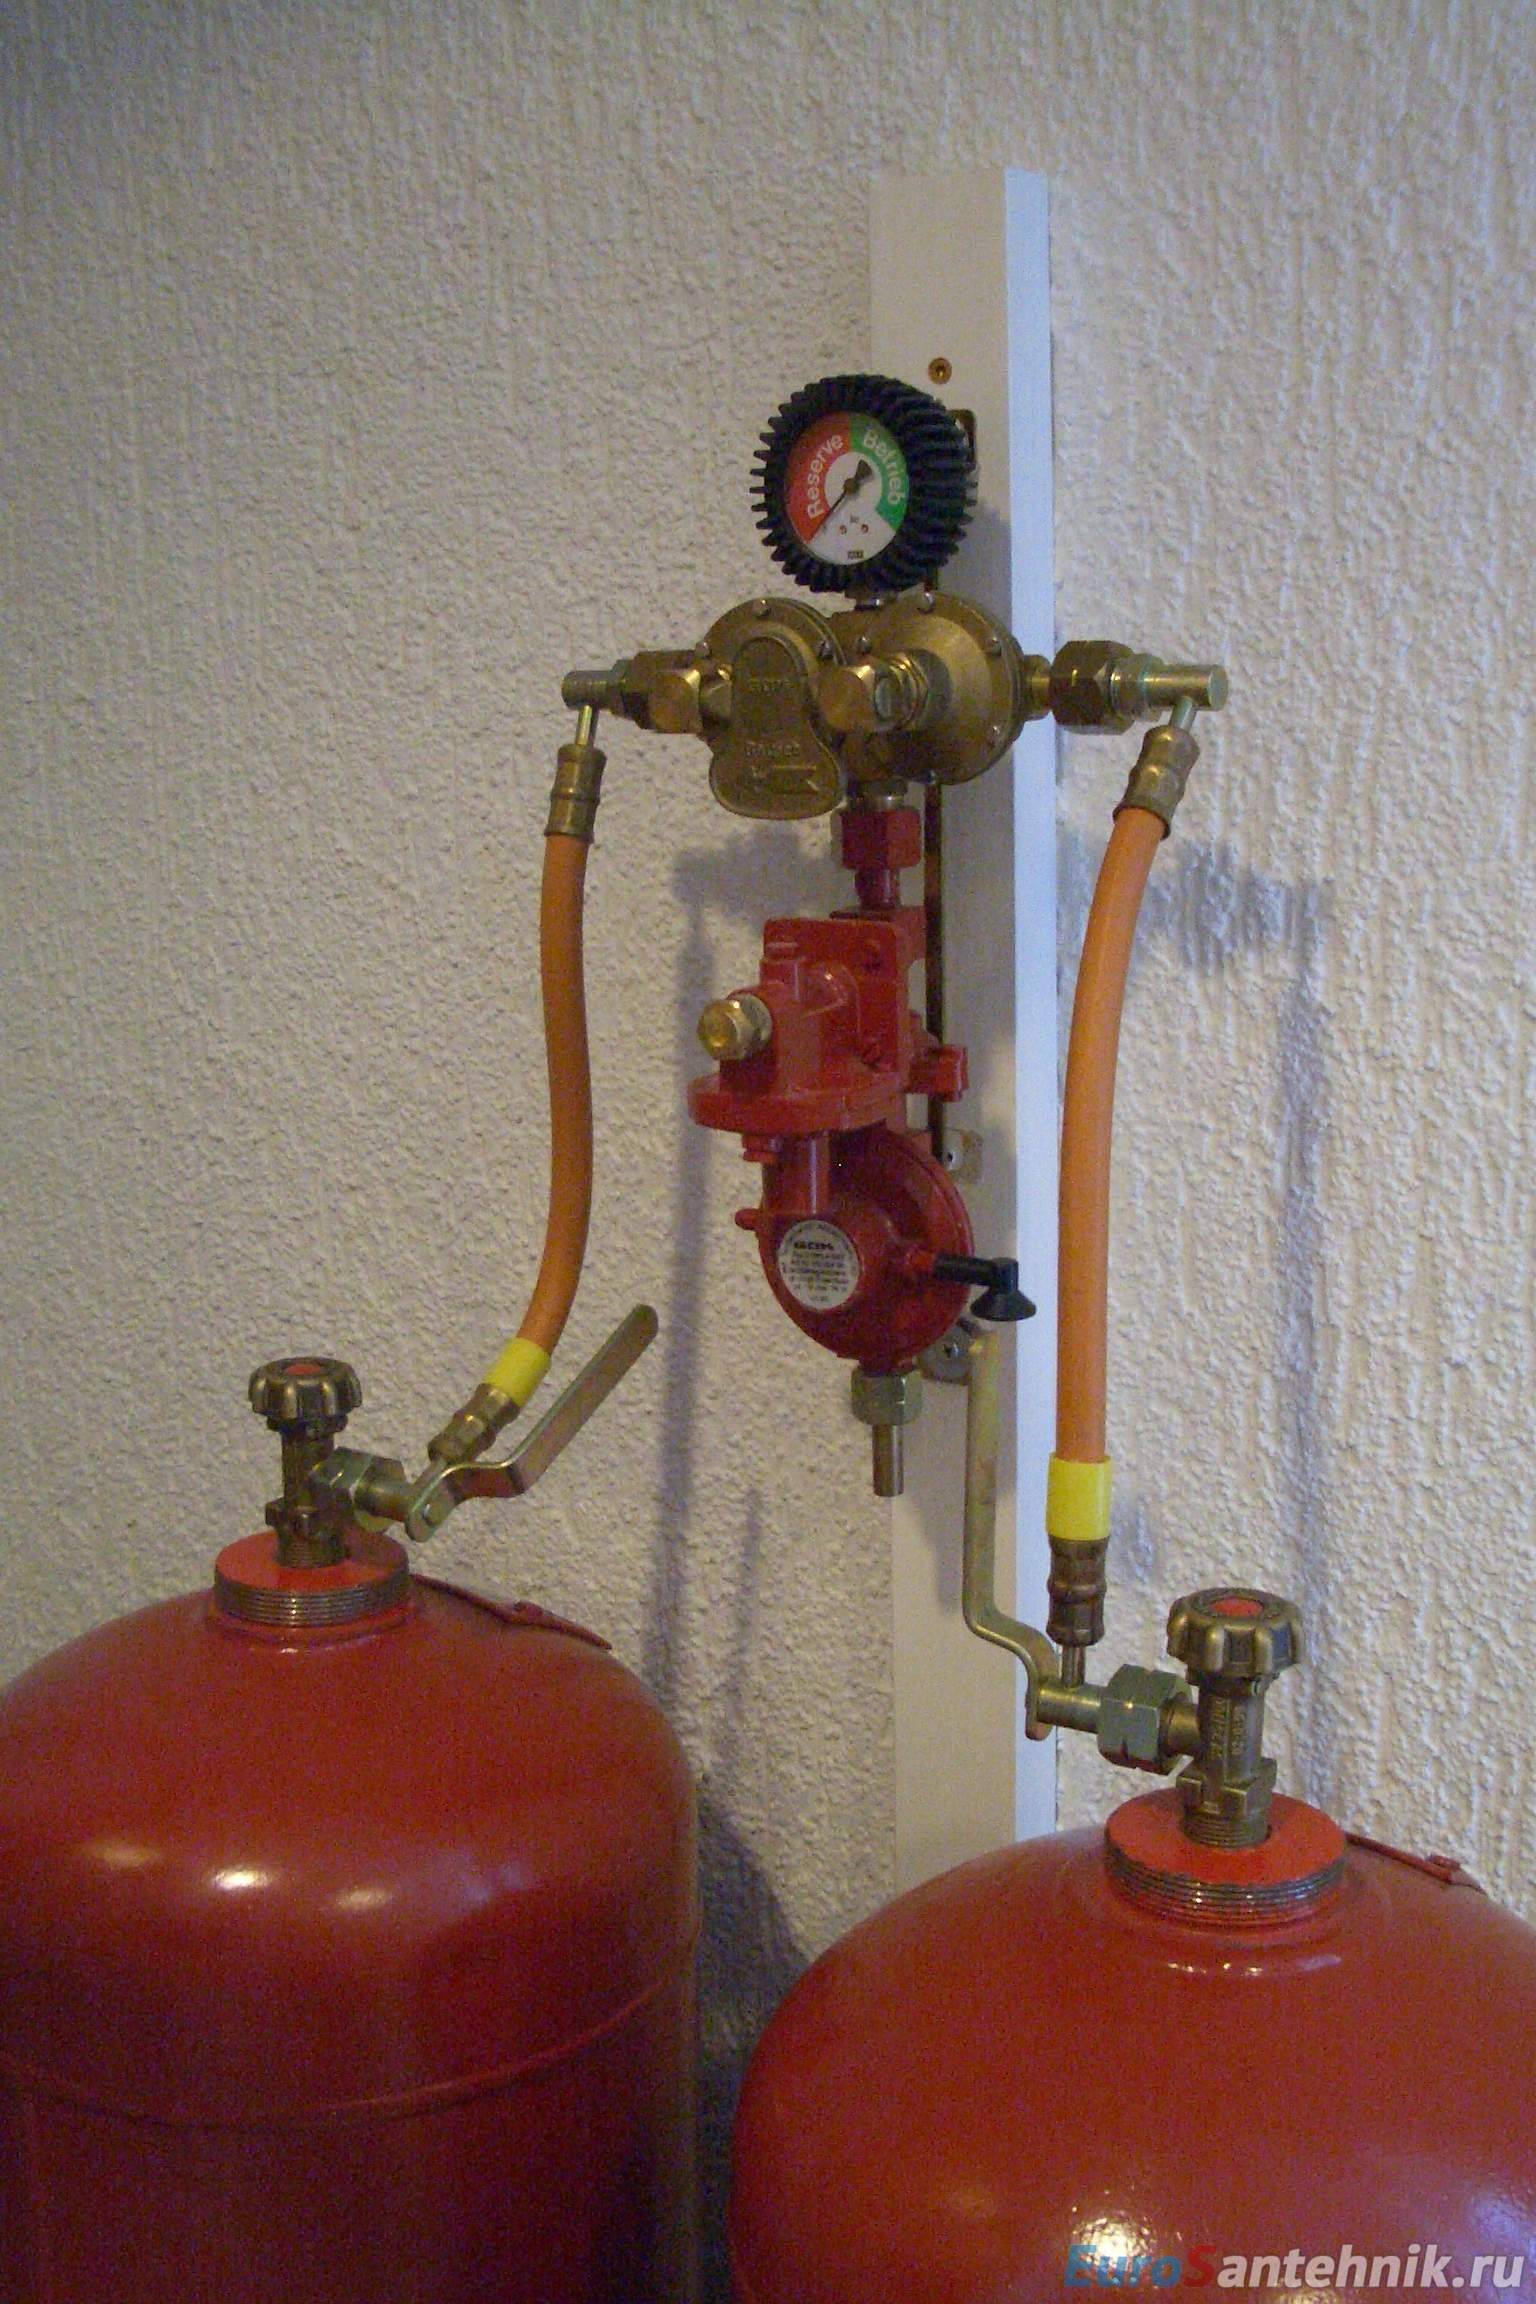 Котлы отопления на сжиженном газе – особенности, выбор, как переделать на пропан от баллонов существующую модель; расход топлива